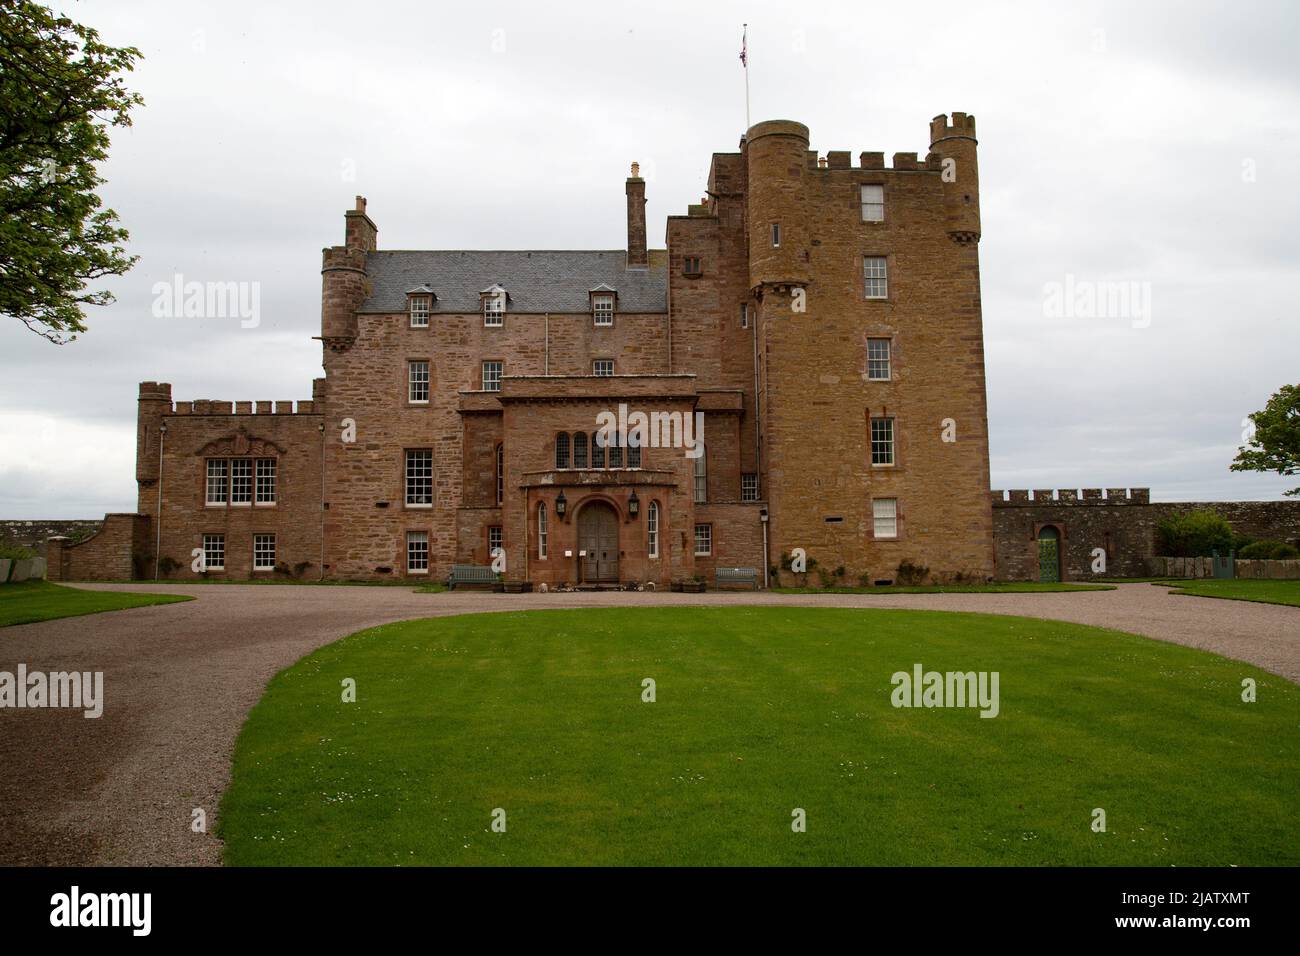 Maison principale, le château de Mey, Mey by Thurso, Caithness, Écosse Banque D'Images